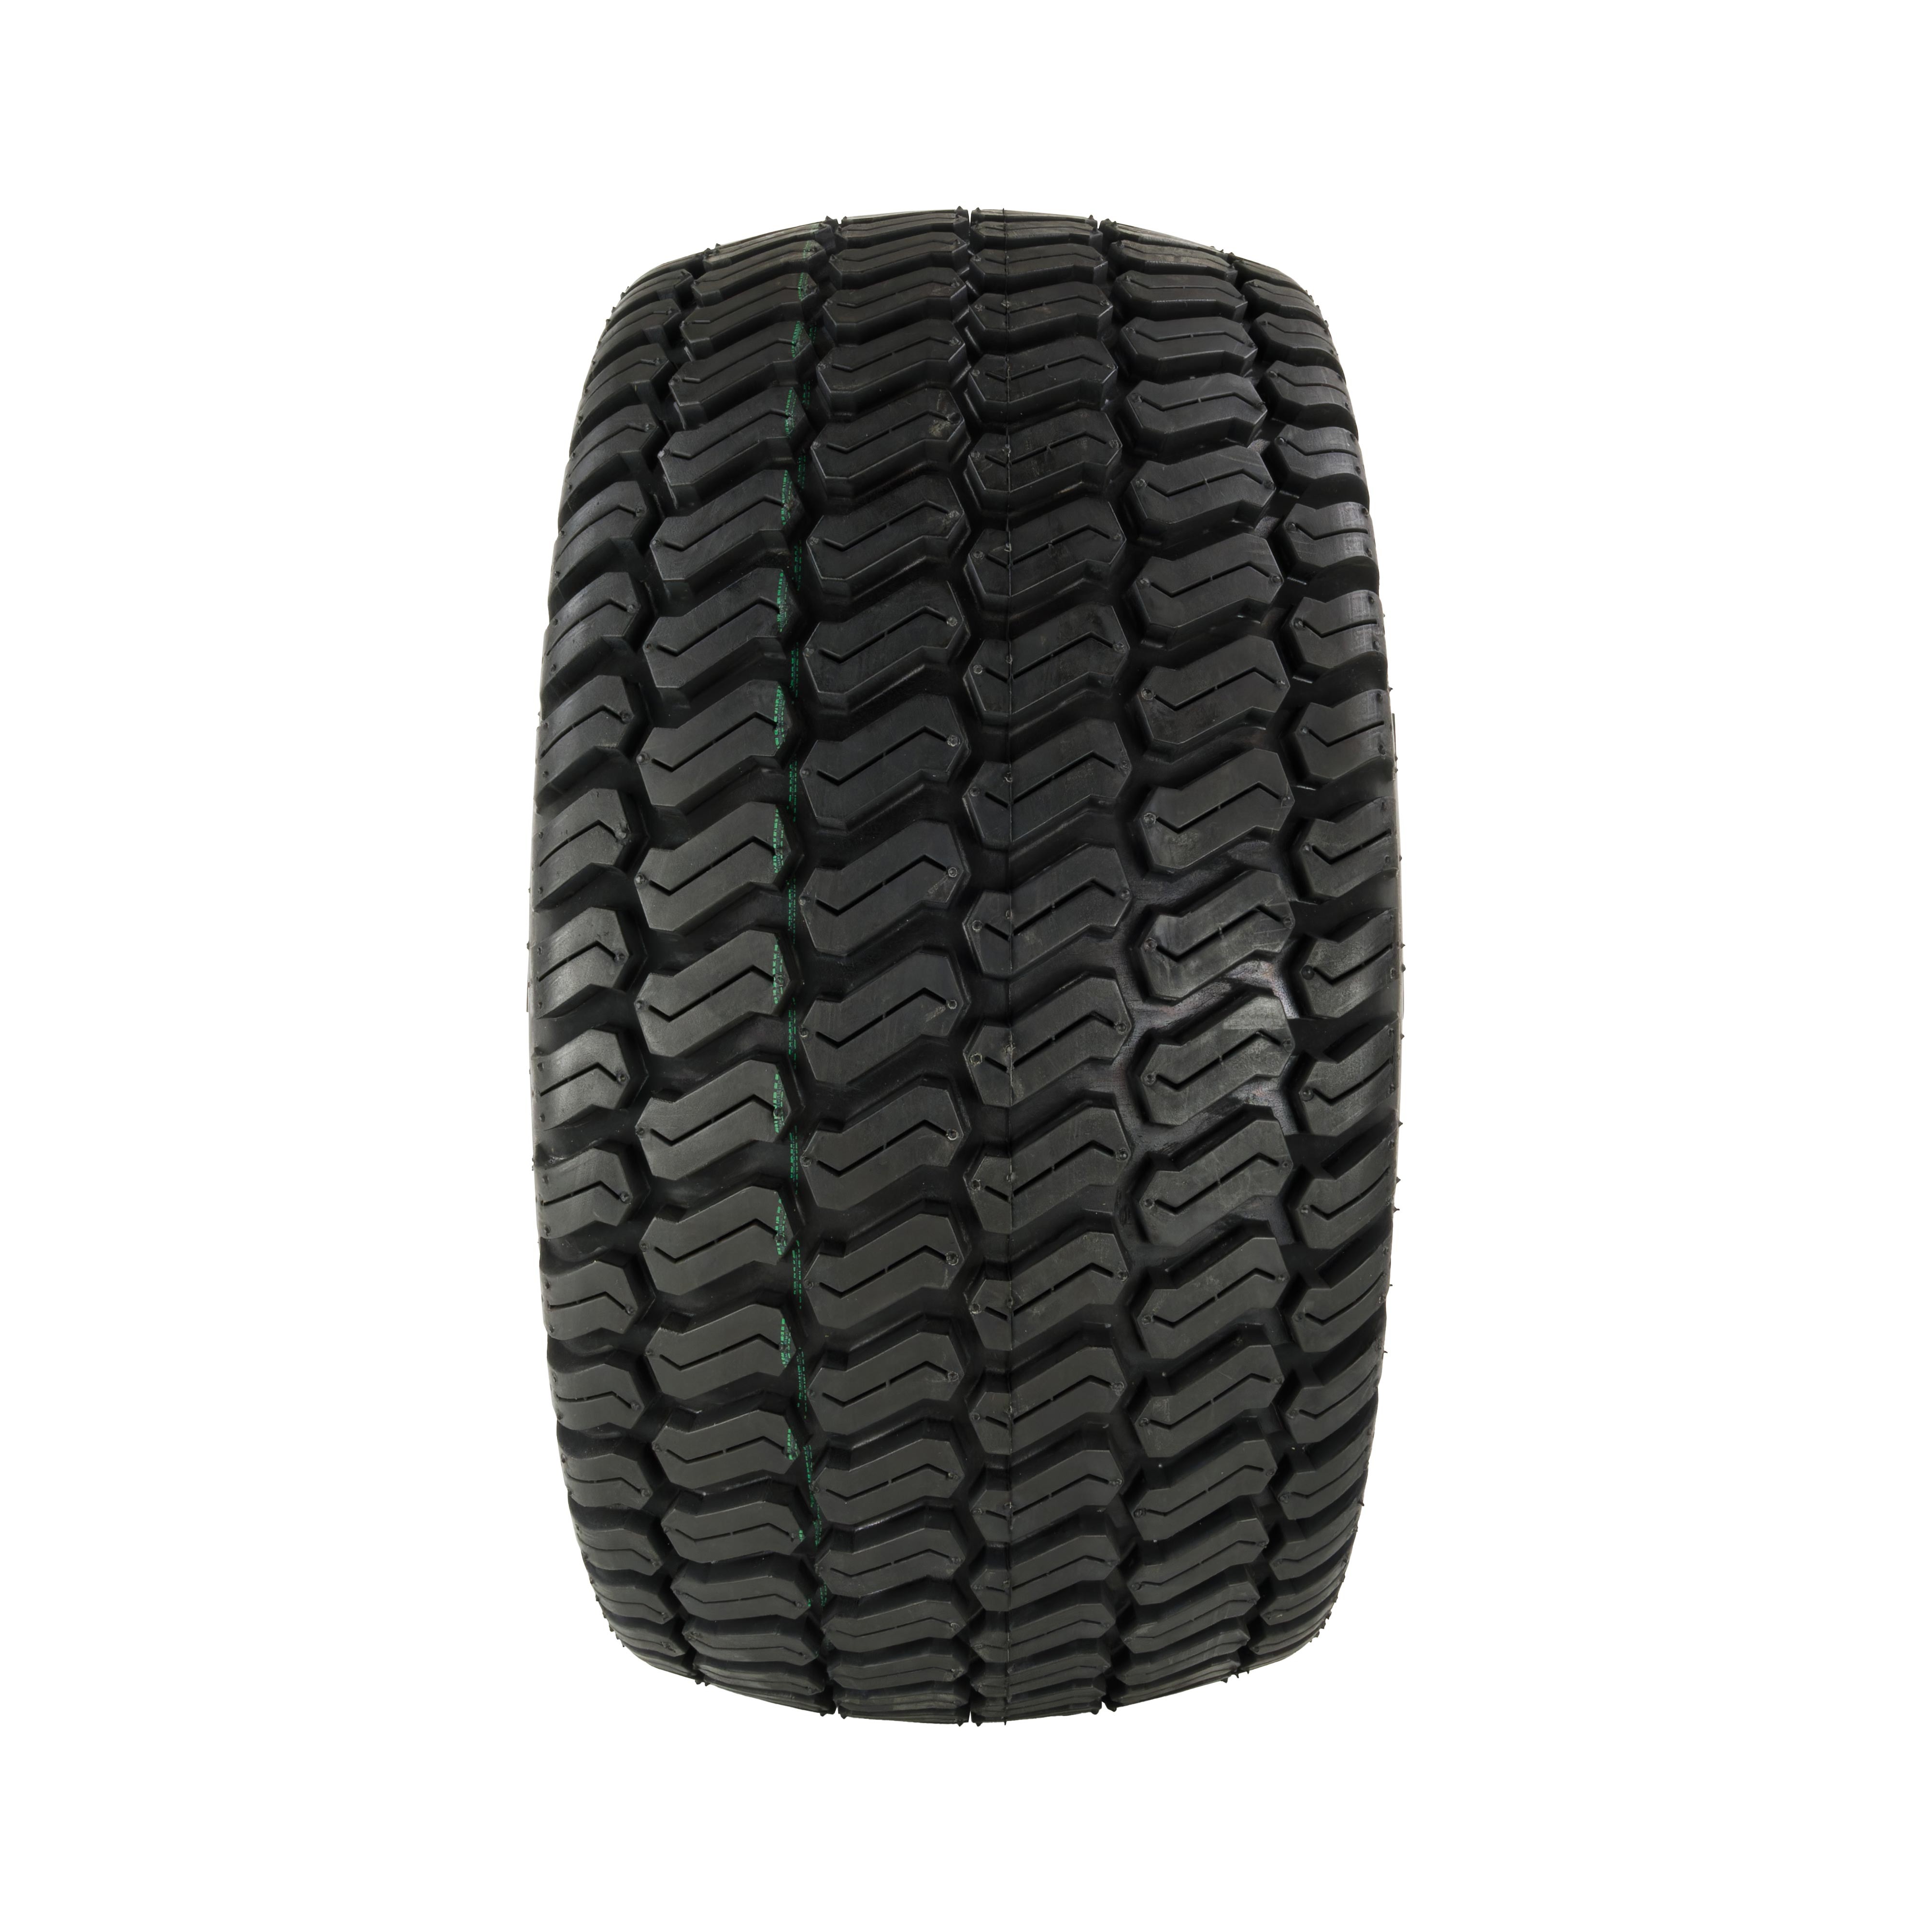 Reifen für Rasentraktor 20x10.00-8, 6PR, TL, BKT LG306